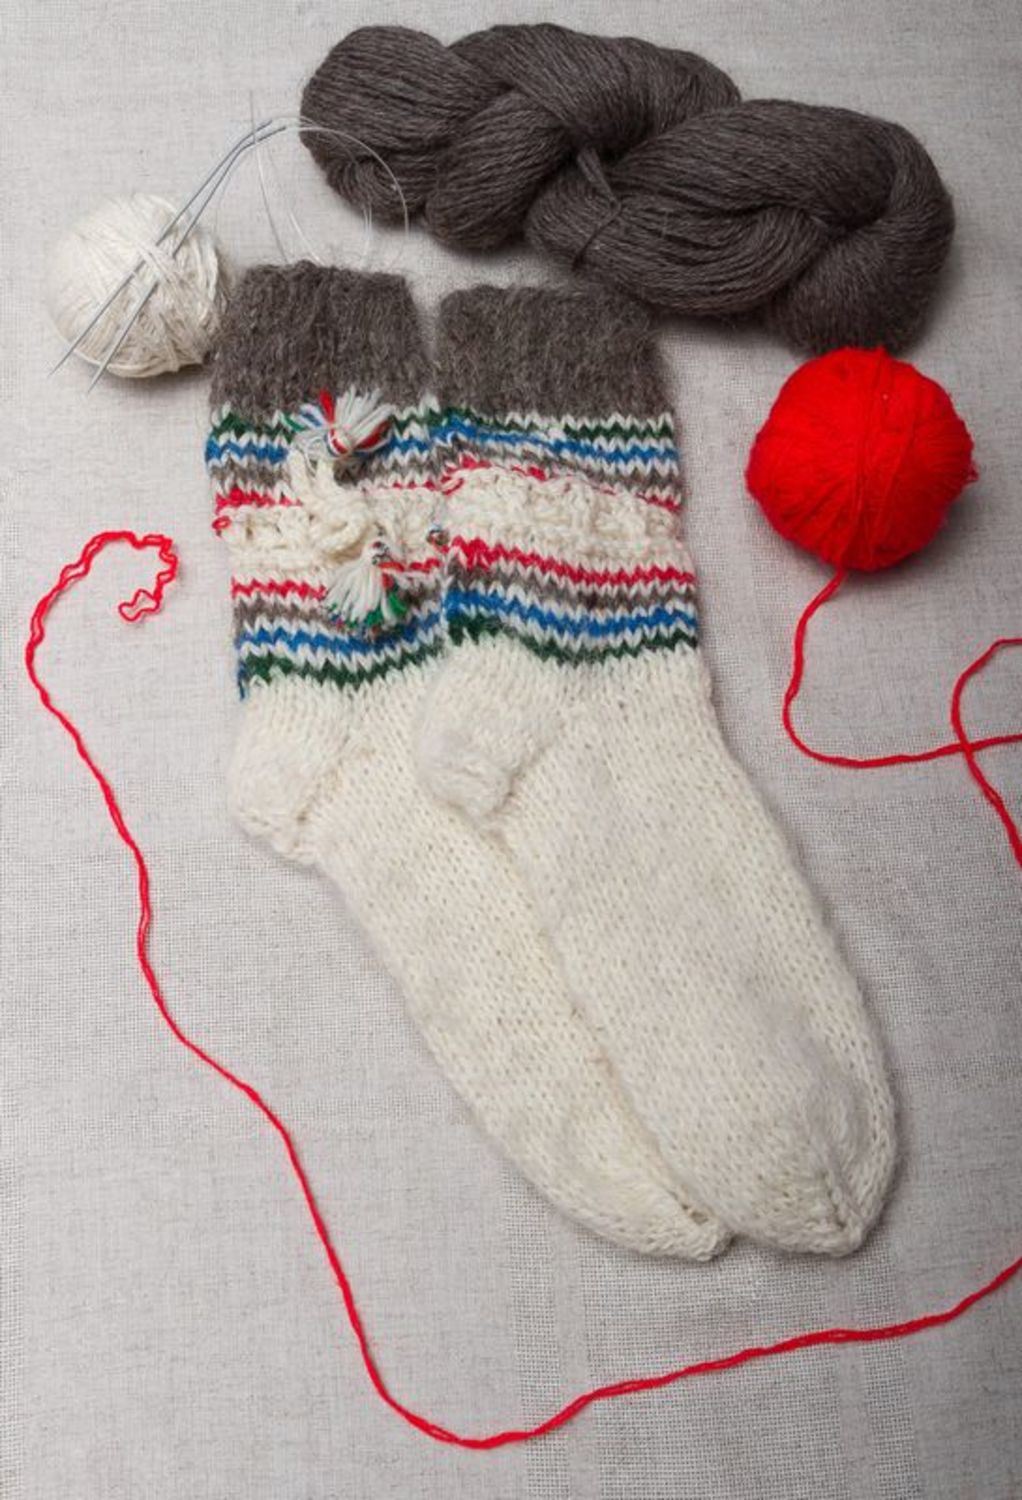 White women's socks made of wool photo 1